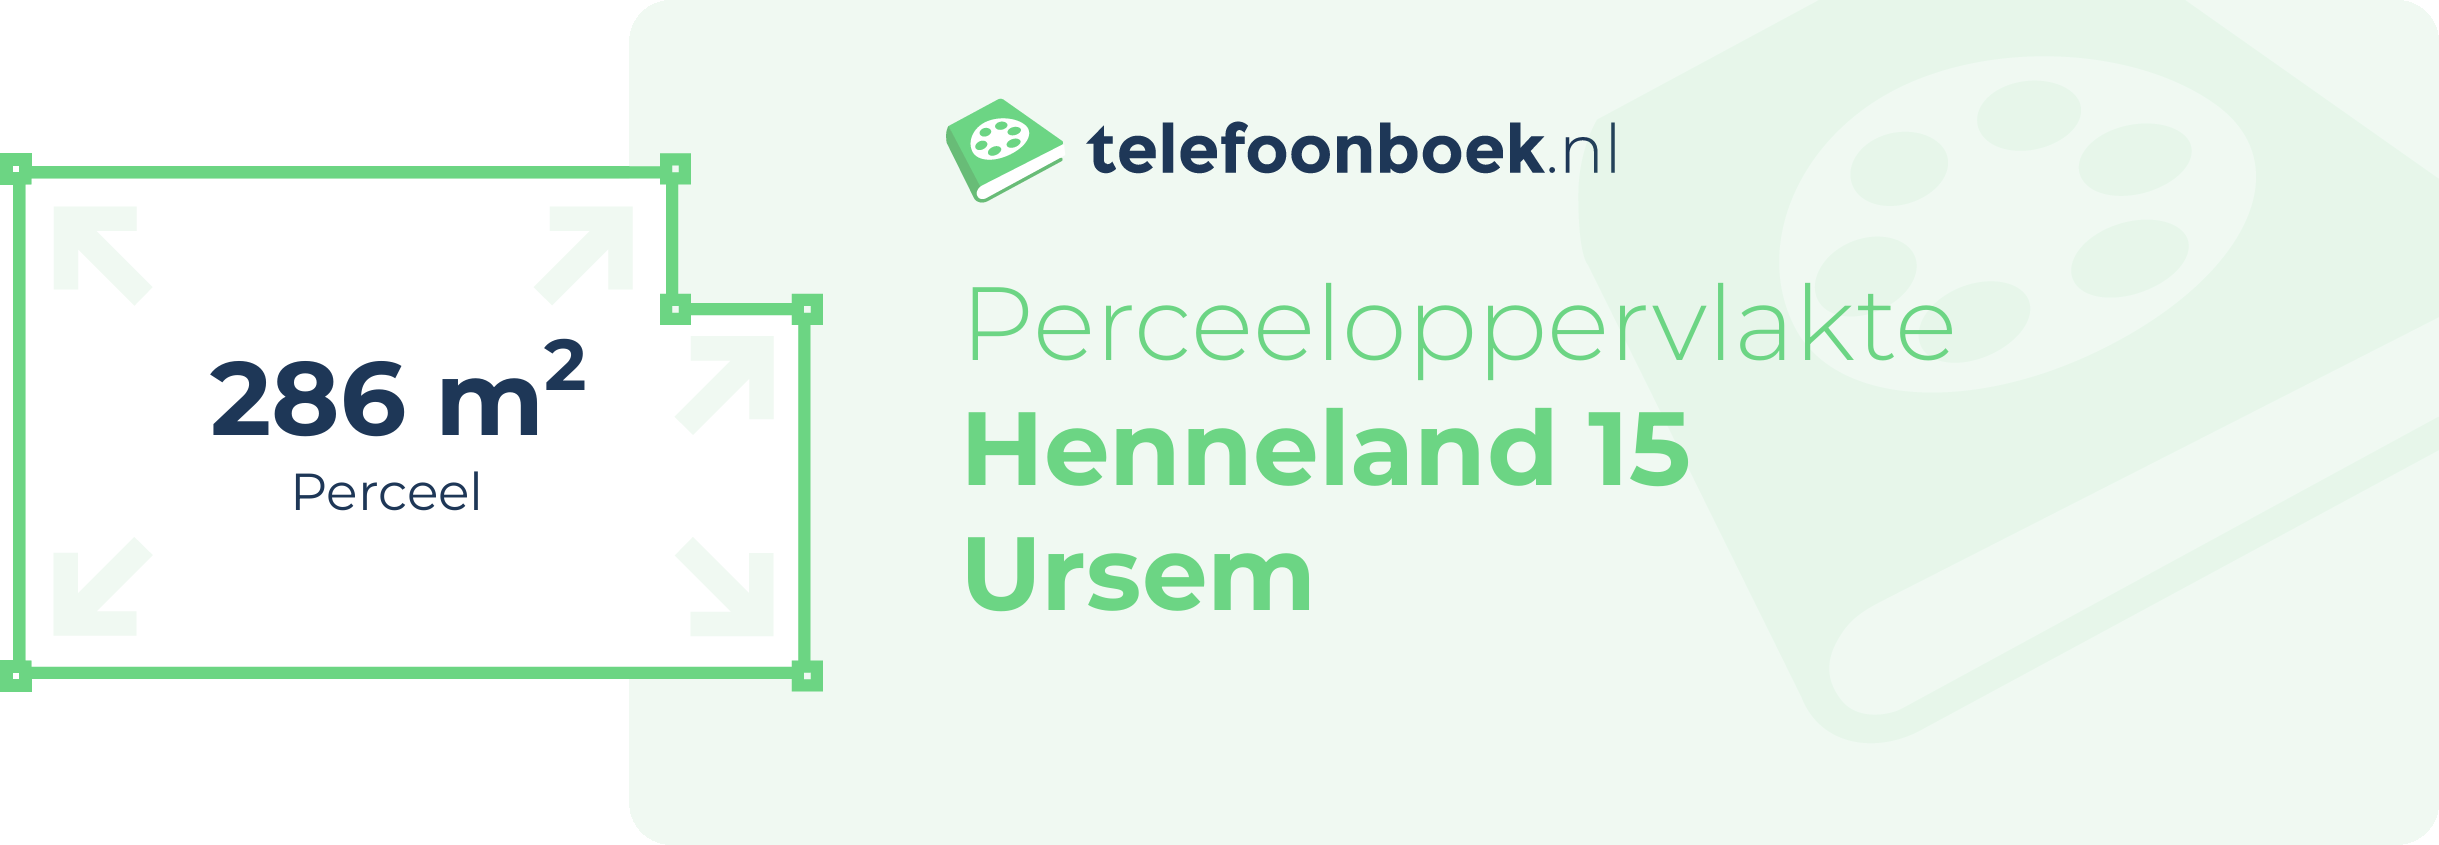 Perceeloppervlakte Henneland 15 Ursem